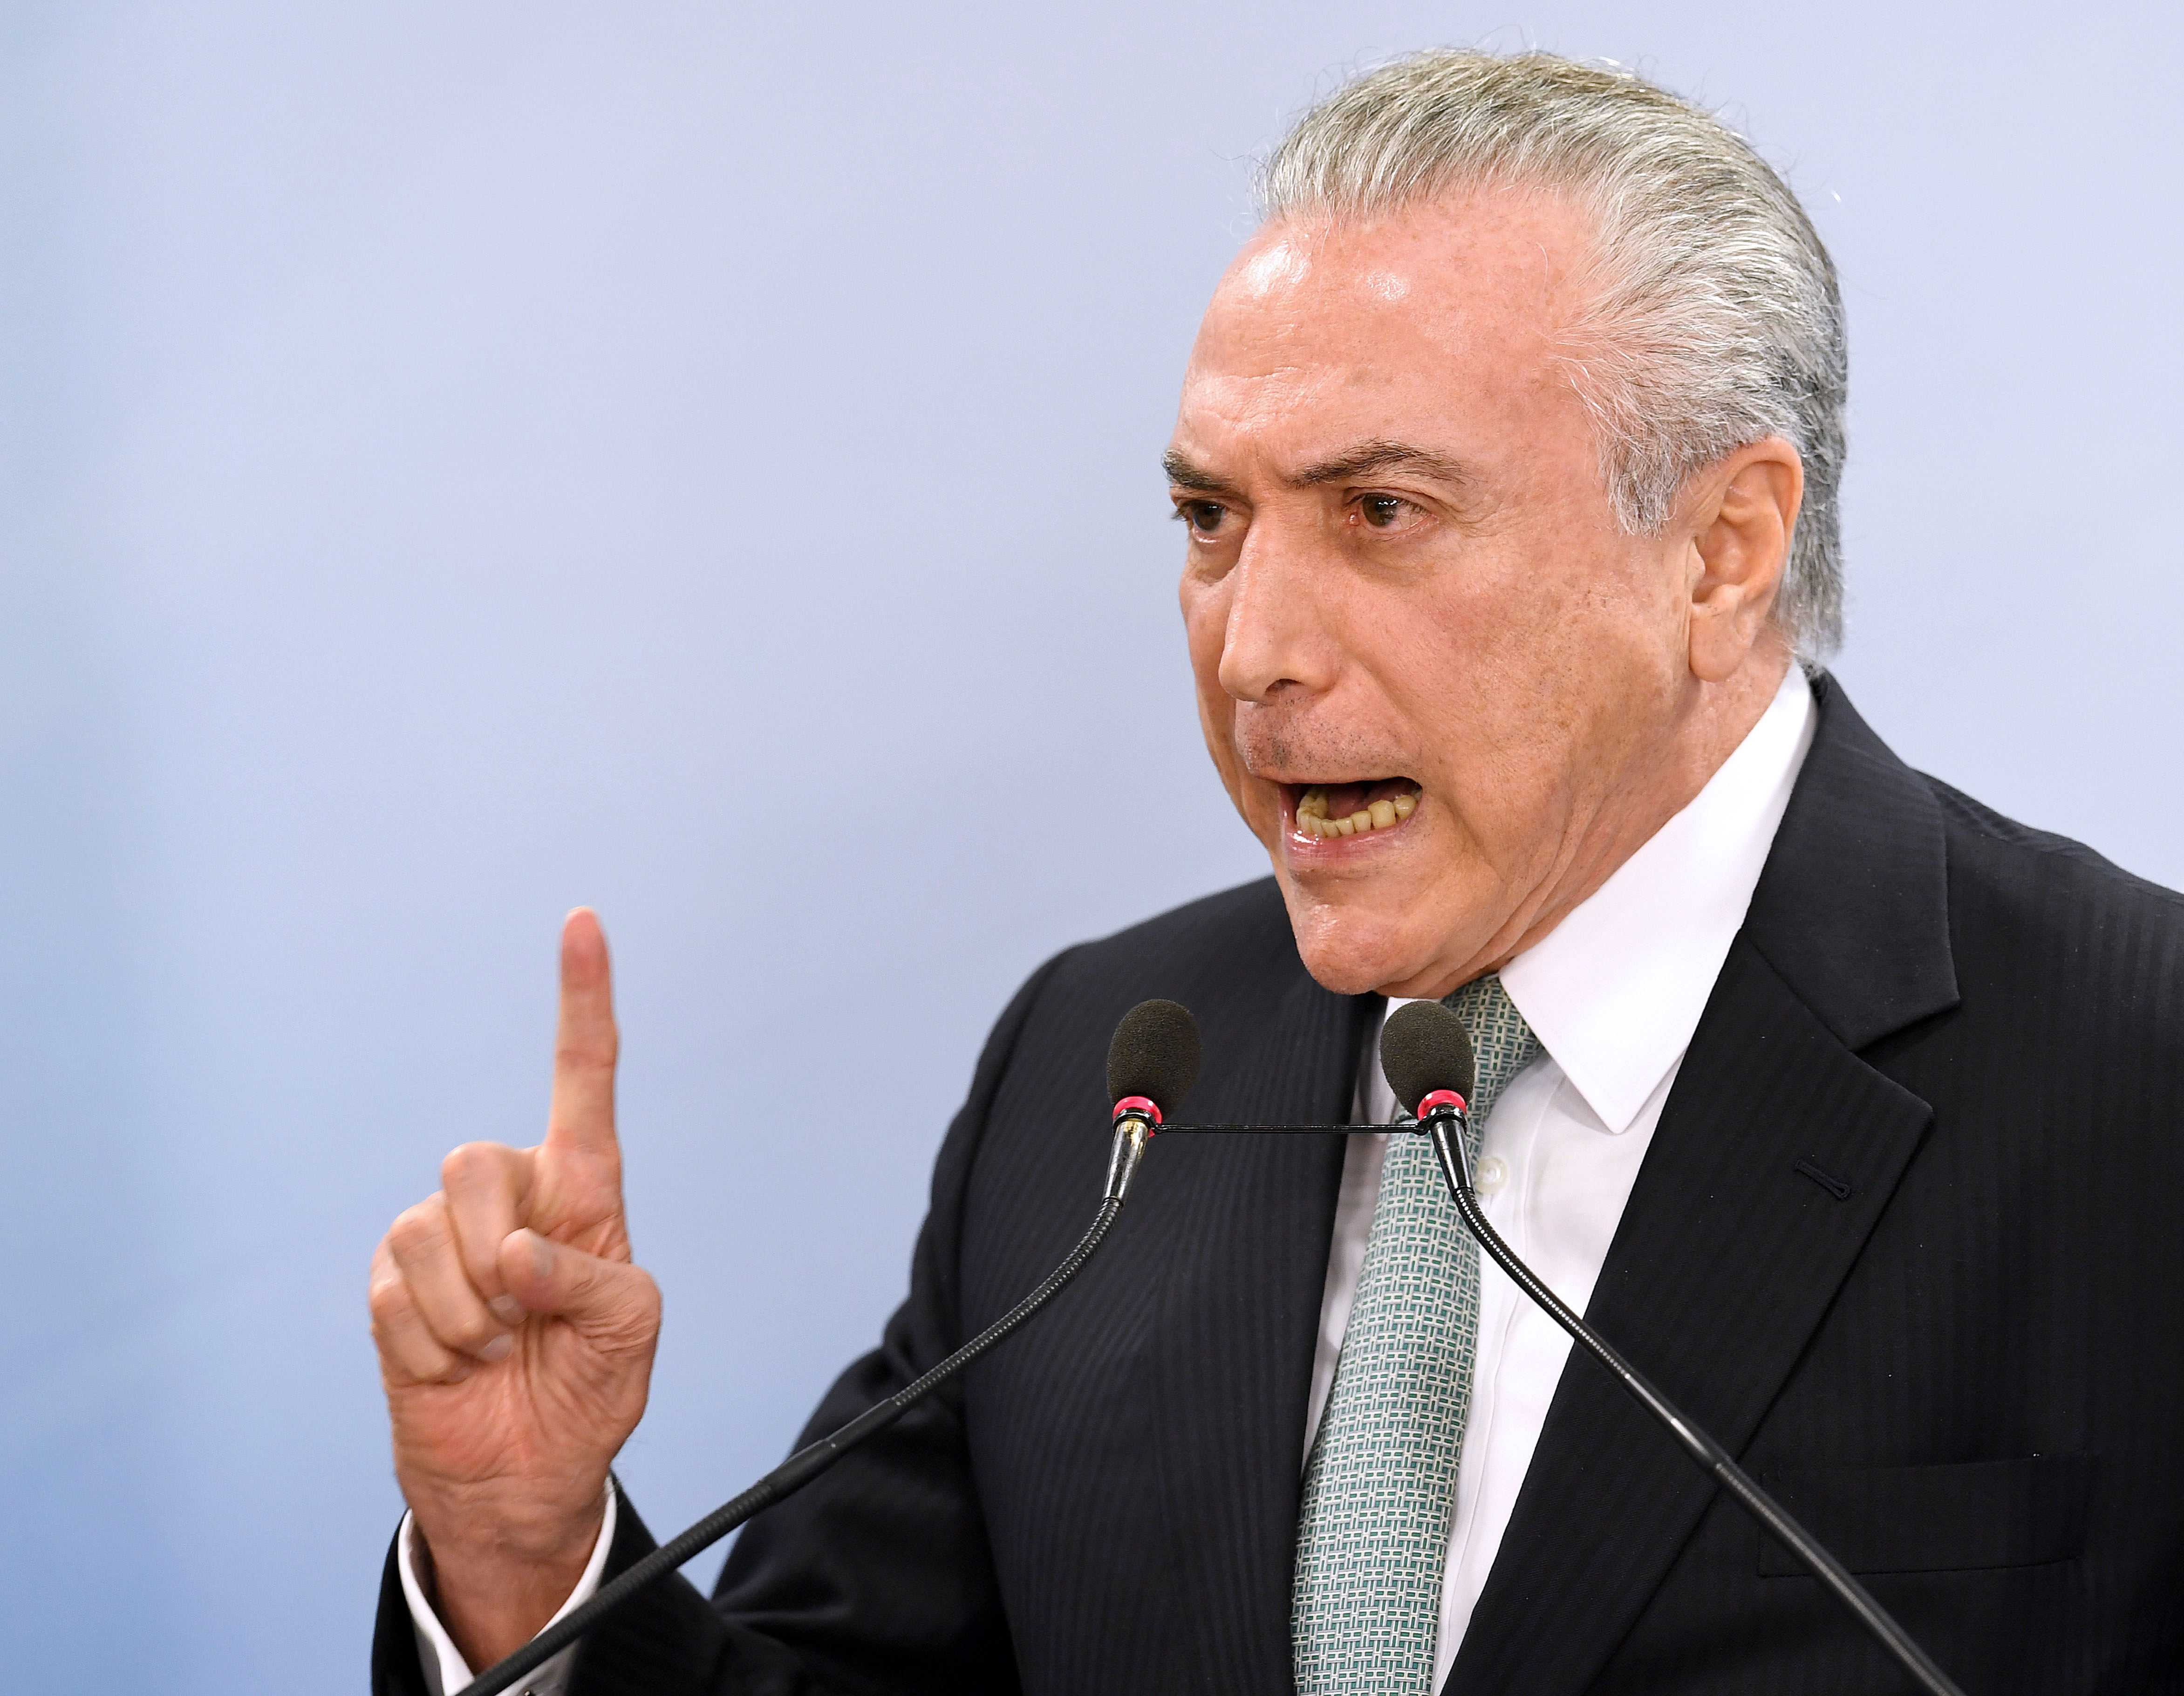 Felmentették a brazil elnököt az illegális kampányfinanszírozás vádja alól